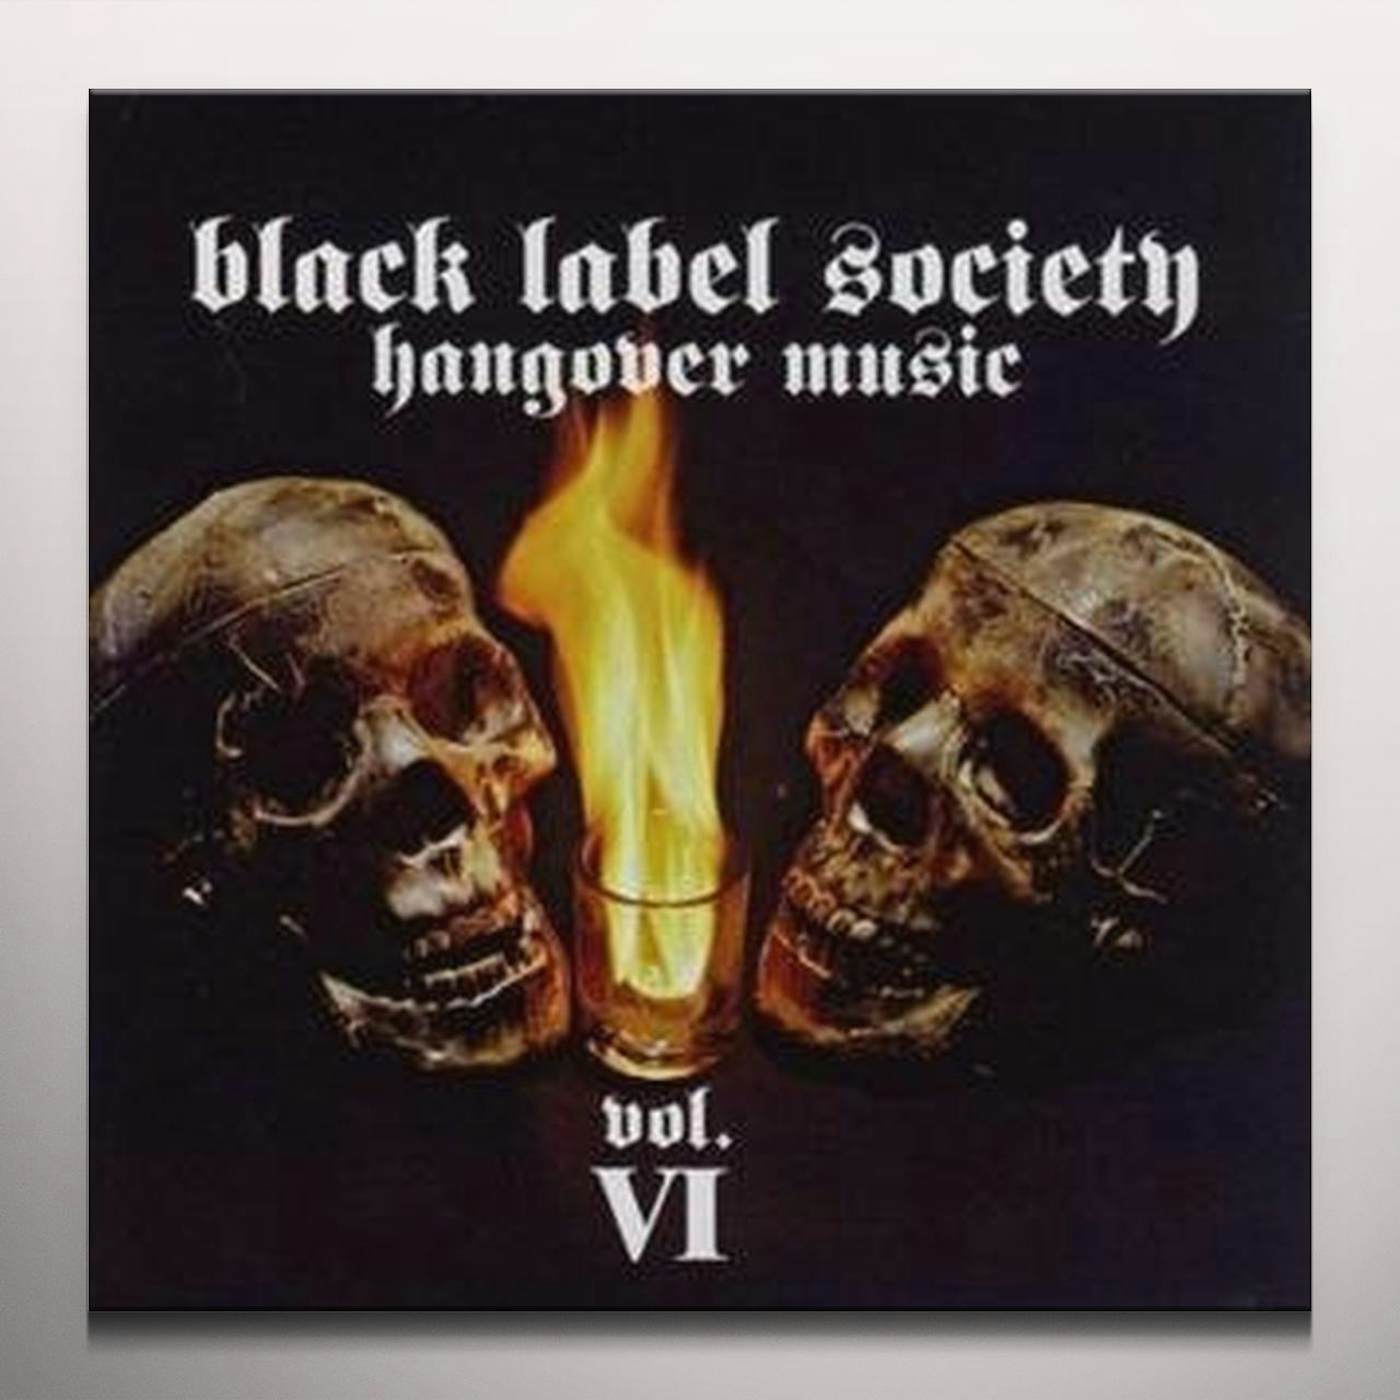 Black Label Society HANGOVER MUSIC VI (LTD) (COLV) (Vinyl)